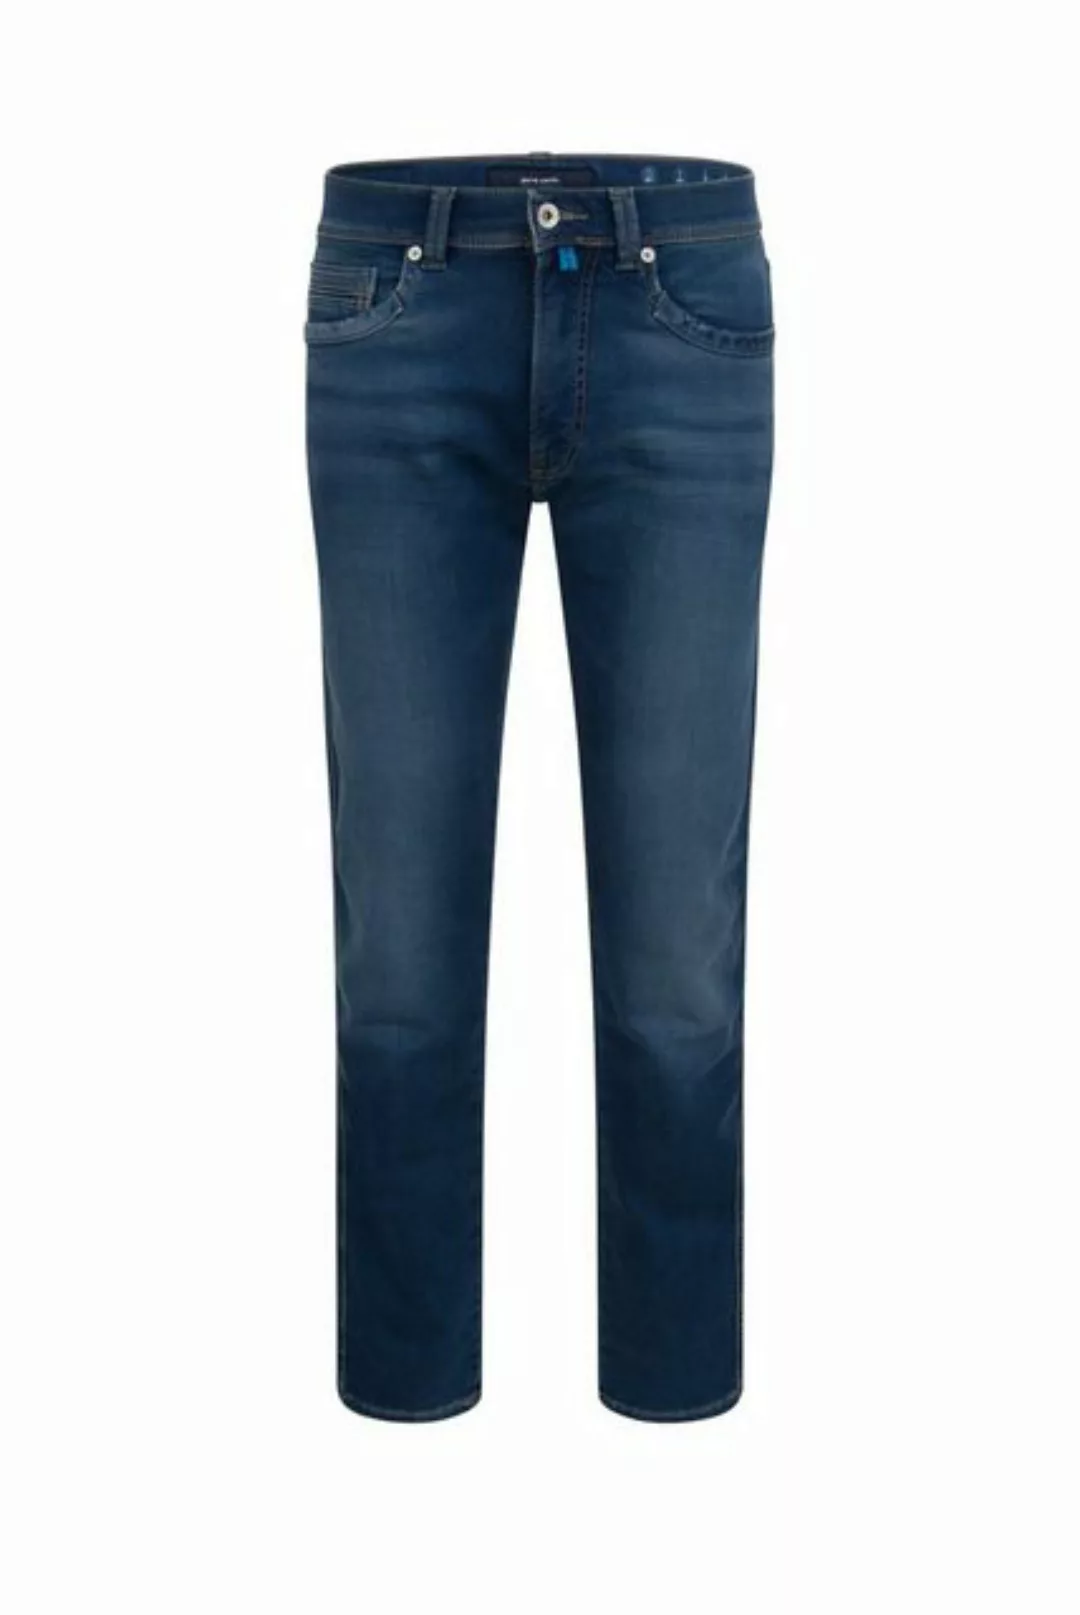 Pierre Cardin 5-Pocket-Jeans PIERRE CARDIN LYON washed out blue buffies 341 günstig online kaufen